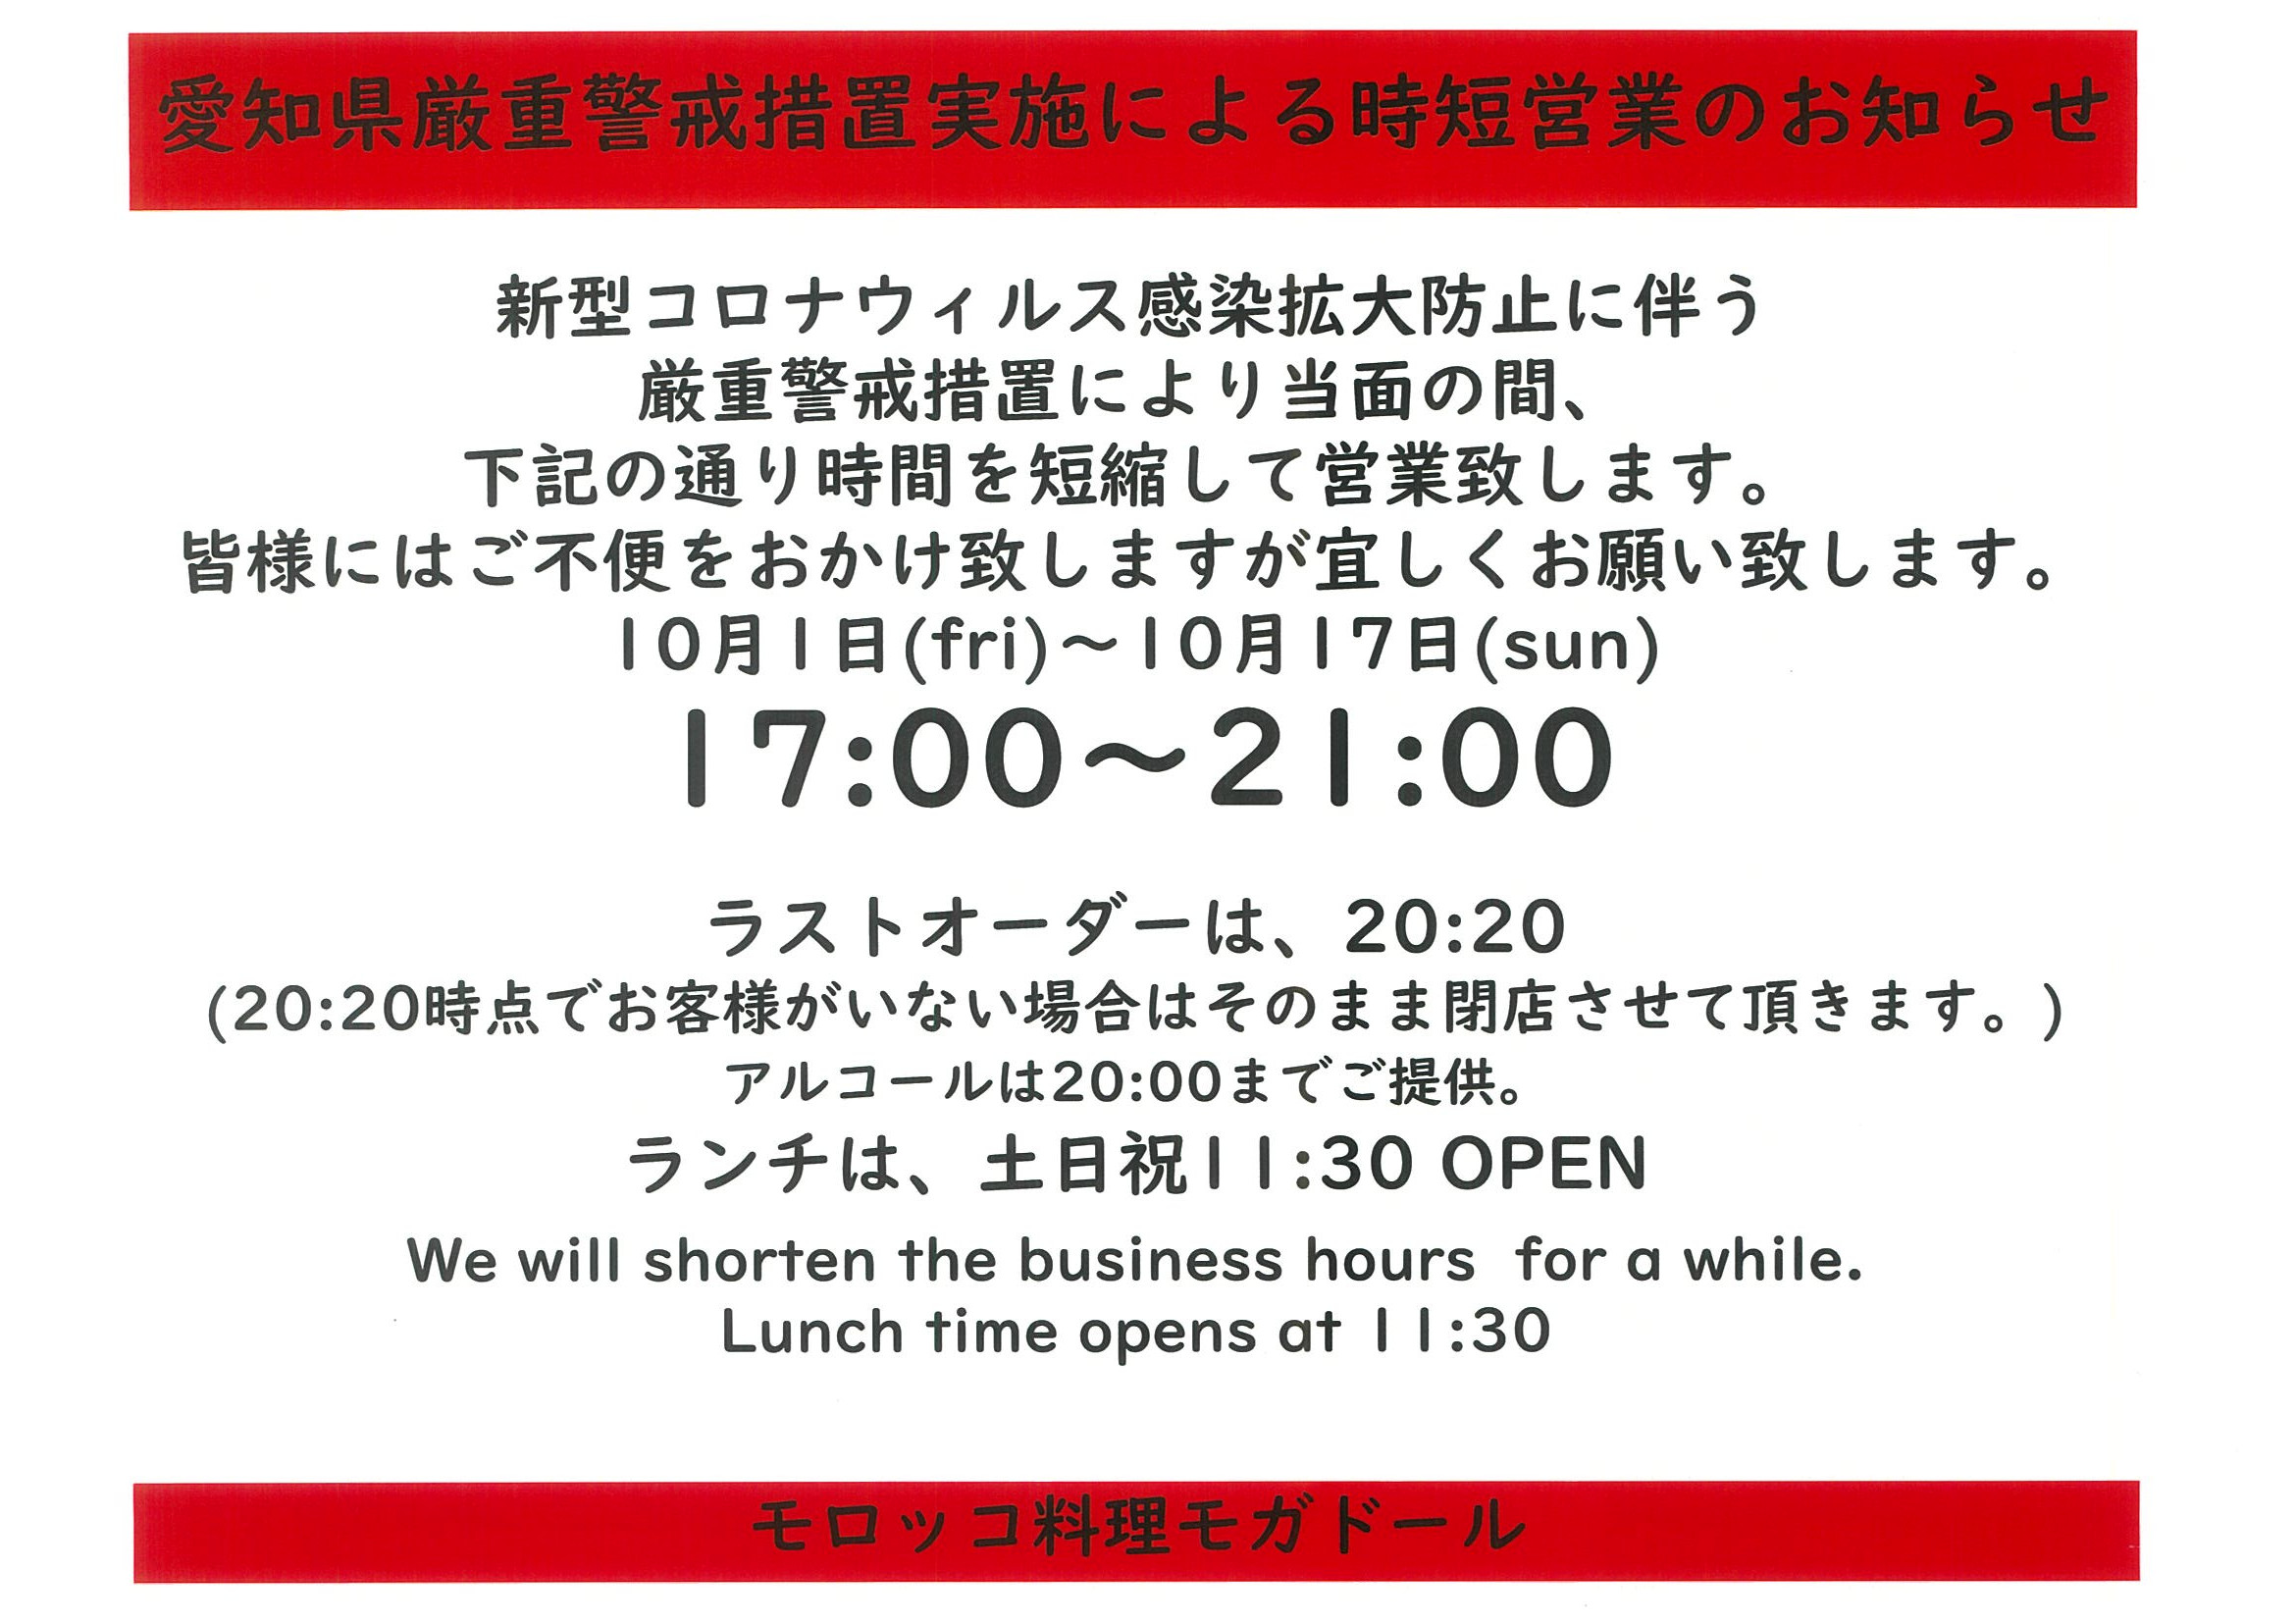 愛知県厳重警戒措置実施による時短営業のお知らせ10月1日～17日